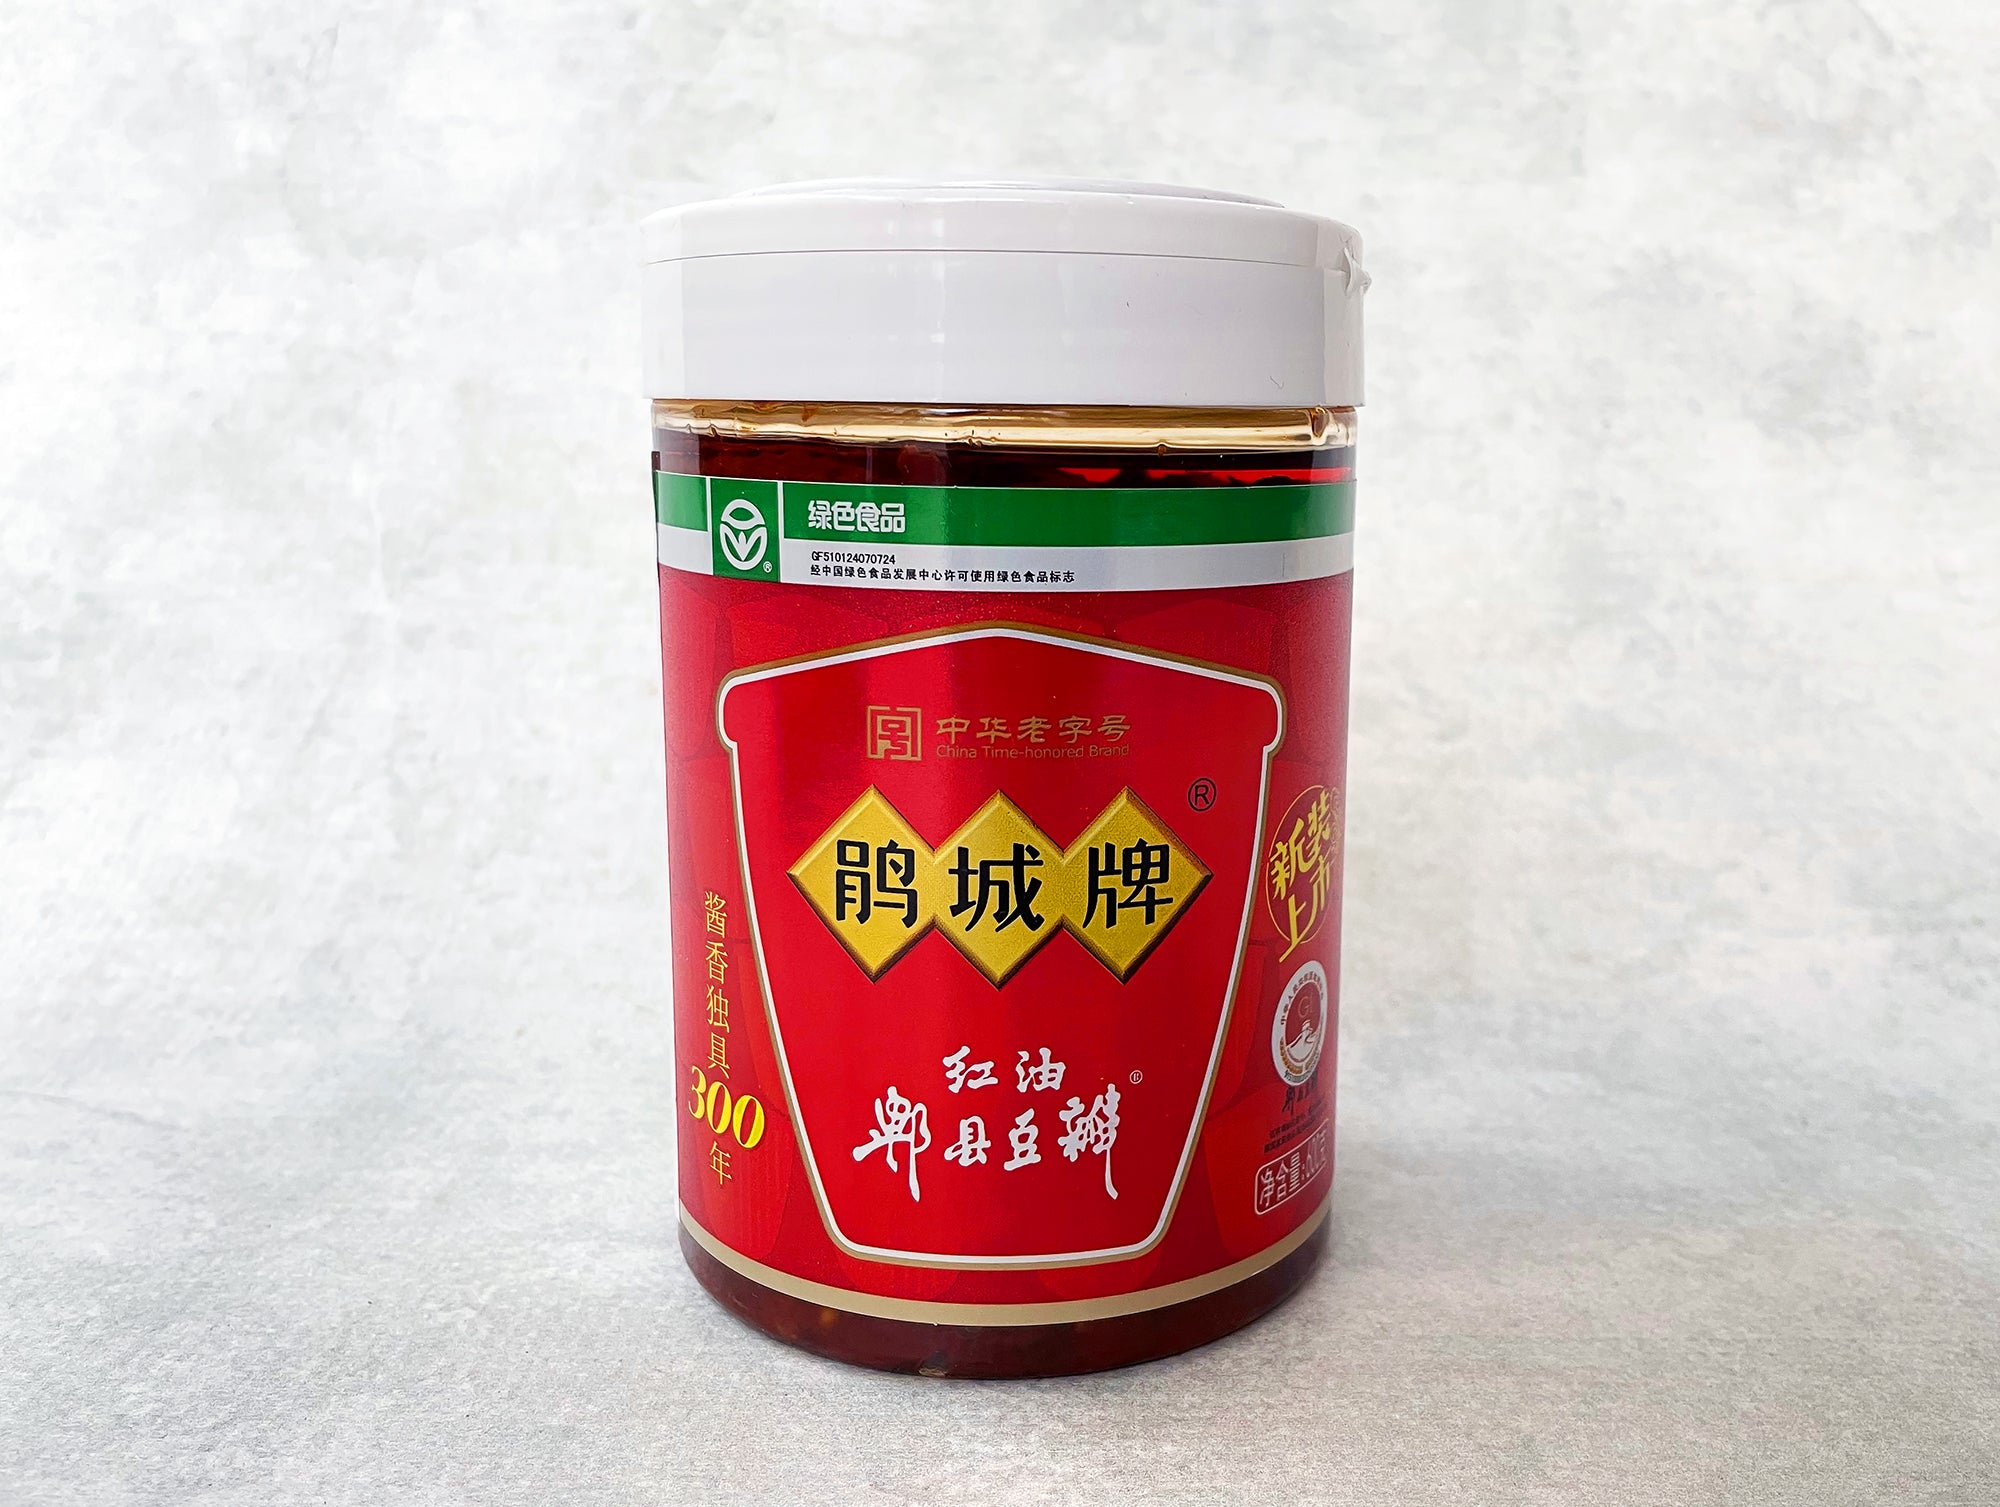 Pixian Red-Oil Broad Bean Paste Cheng Mala - Market The (Juan Doubanjiang)